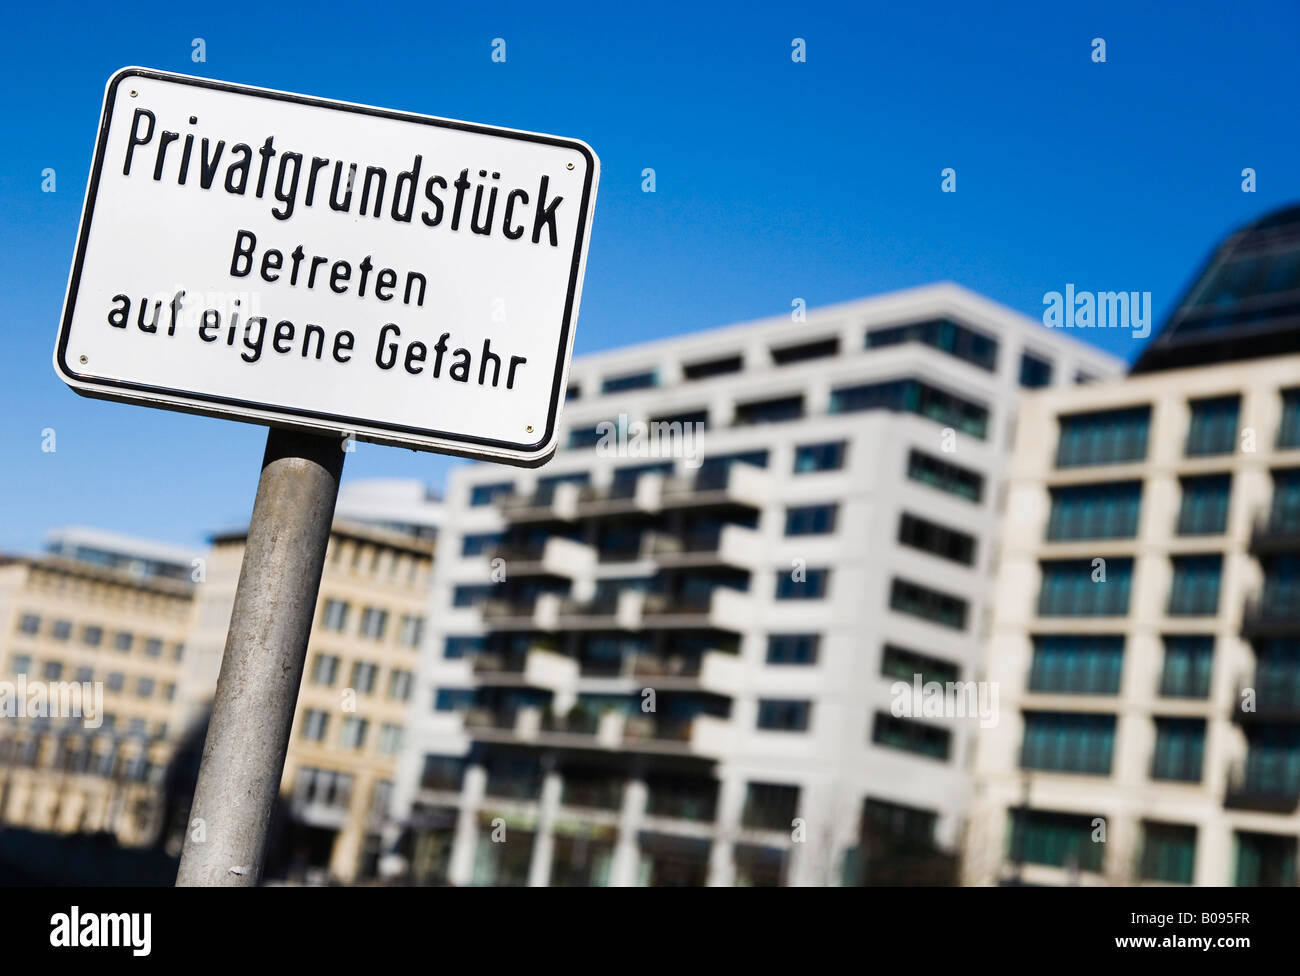 Privatgrundstueck, Zeichen markieren von Privateigentum in Berlin-Mitte, Berlin, Deutschland Stockfoto